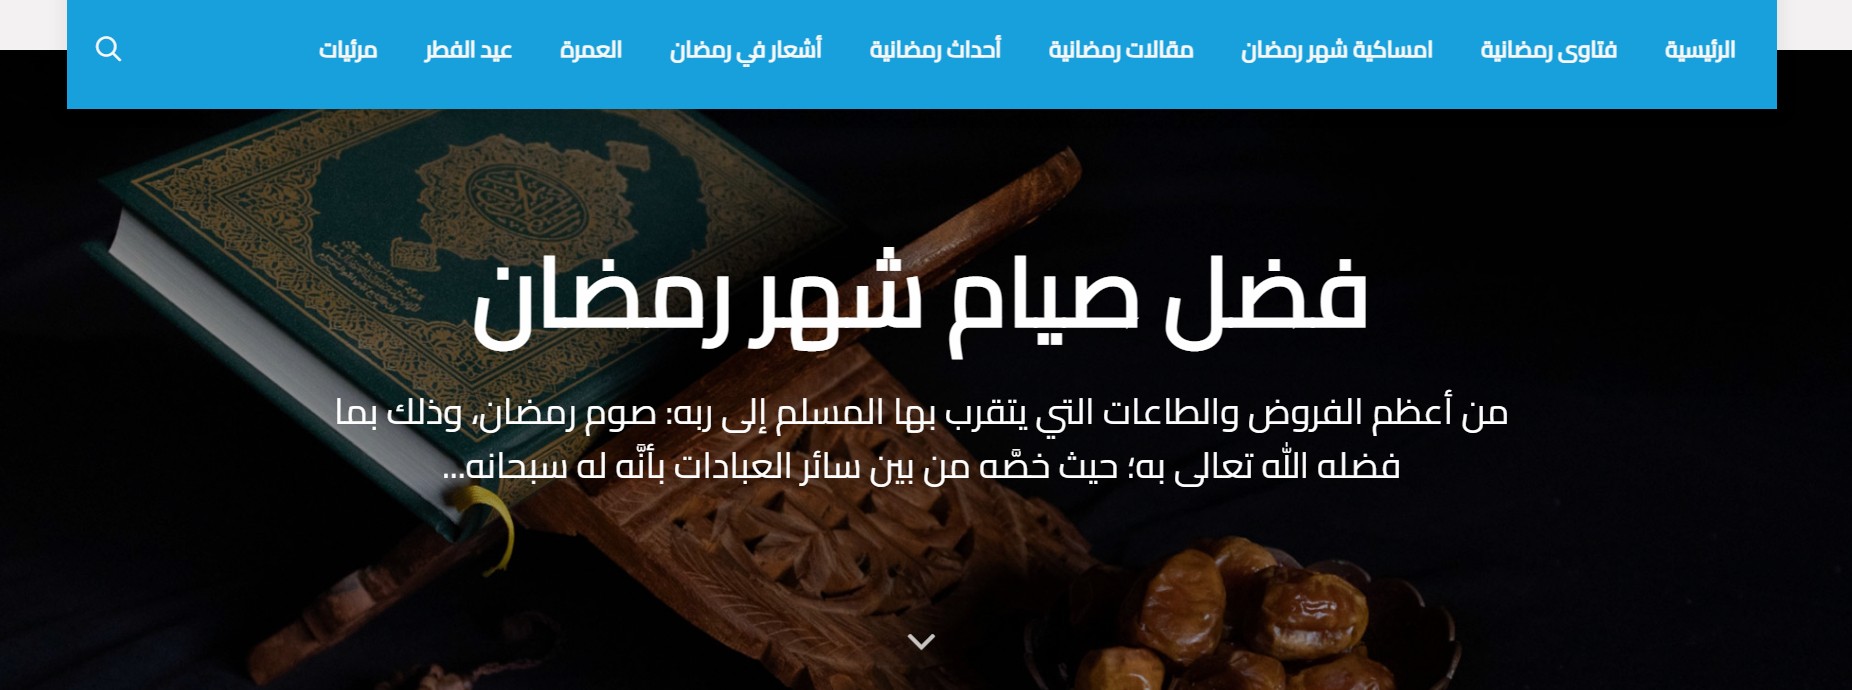 3- صفحة رمضان لموقع دار الافتاء المصرية